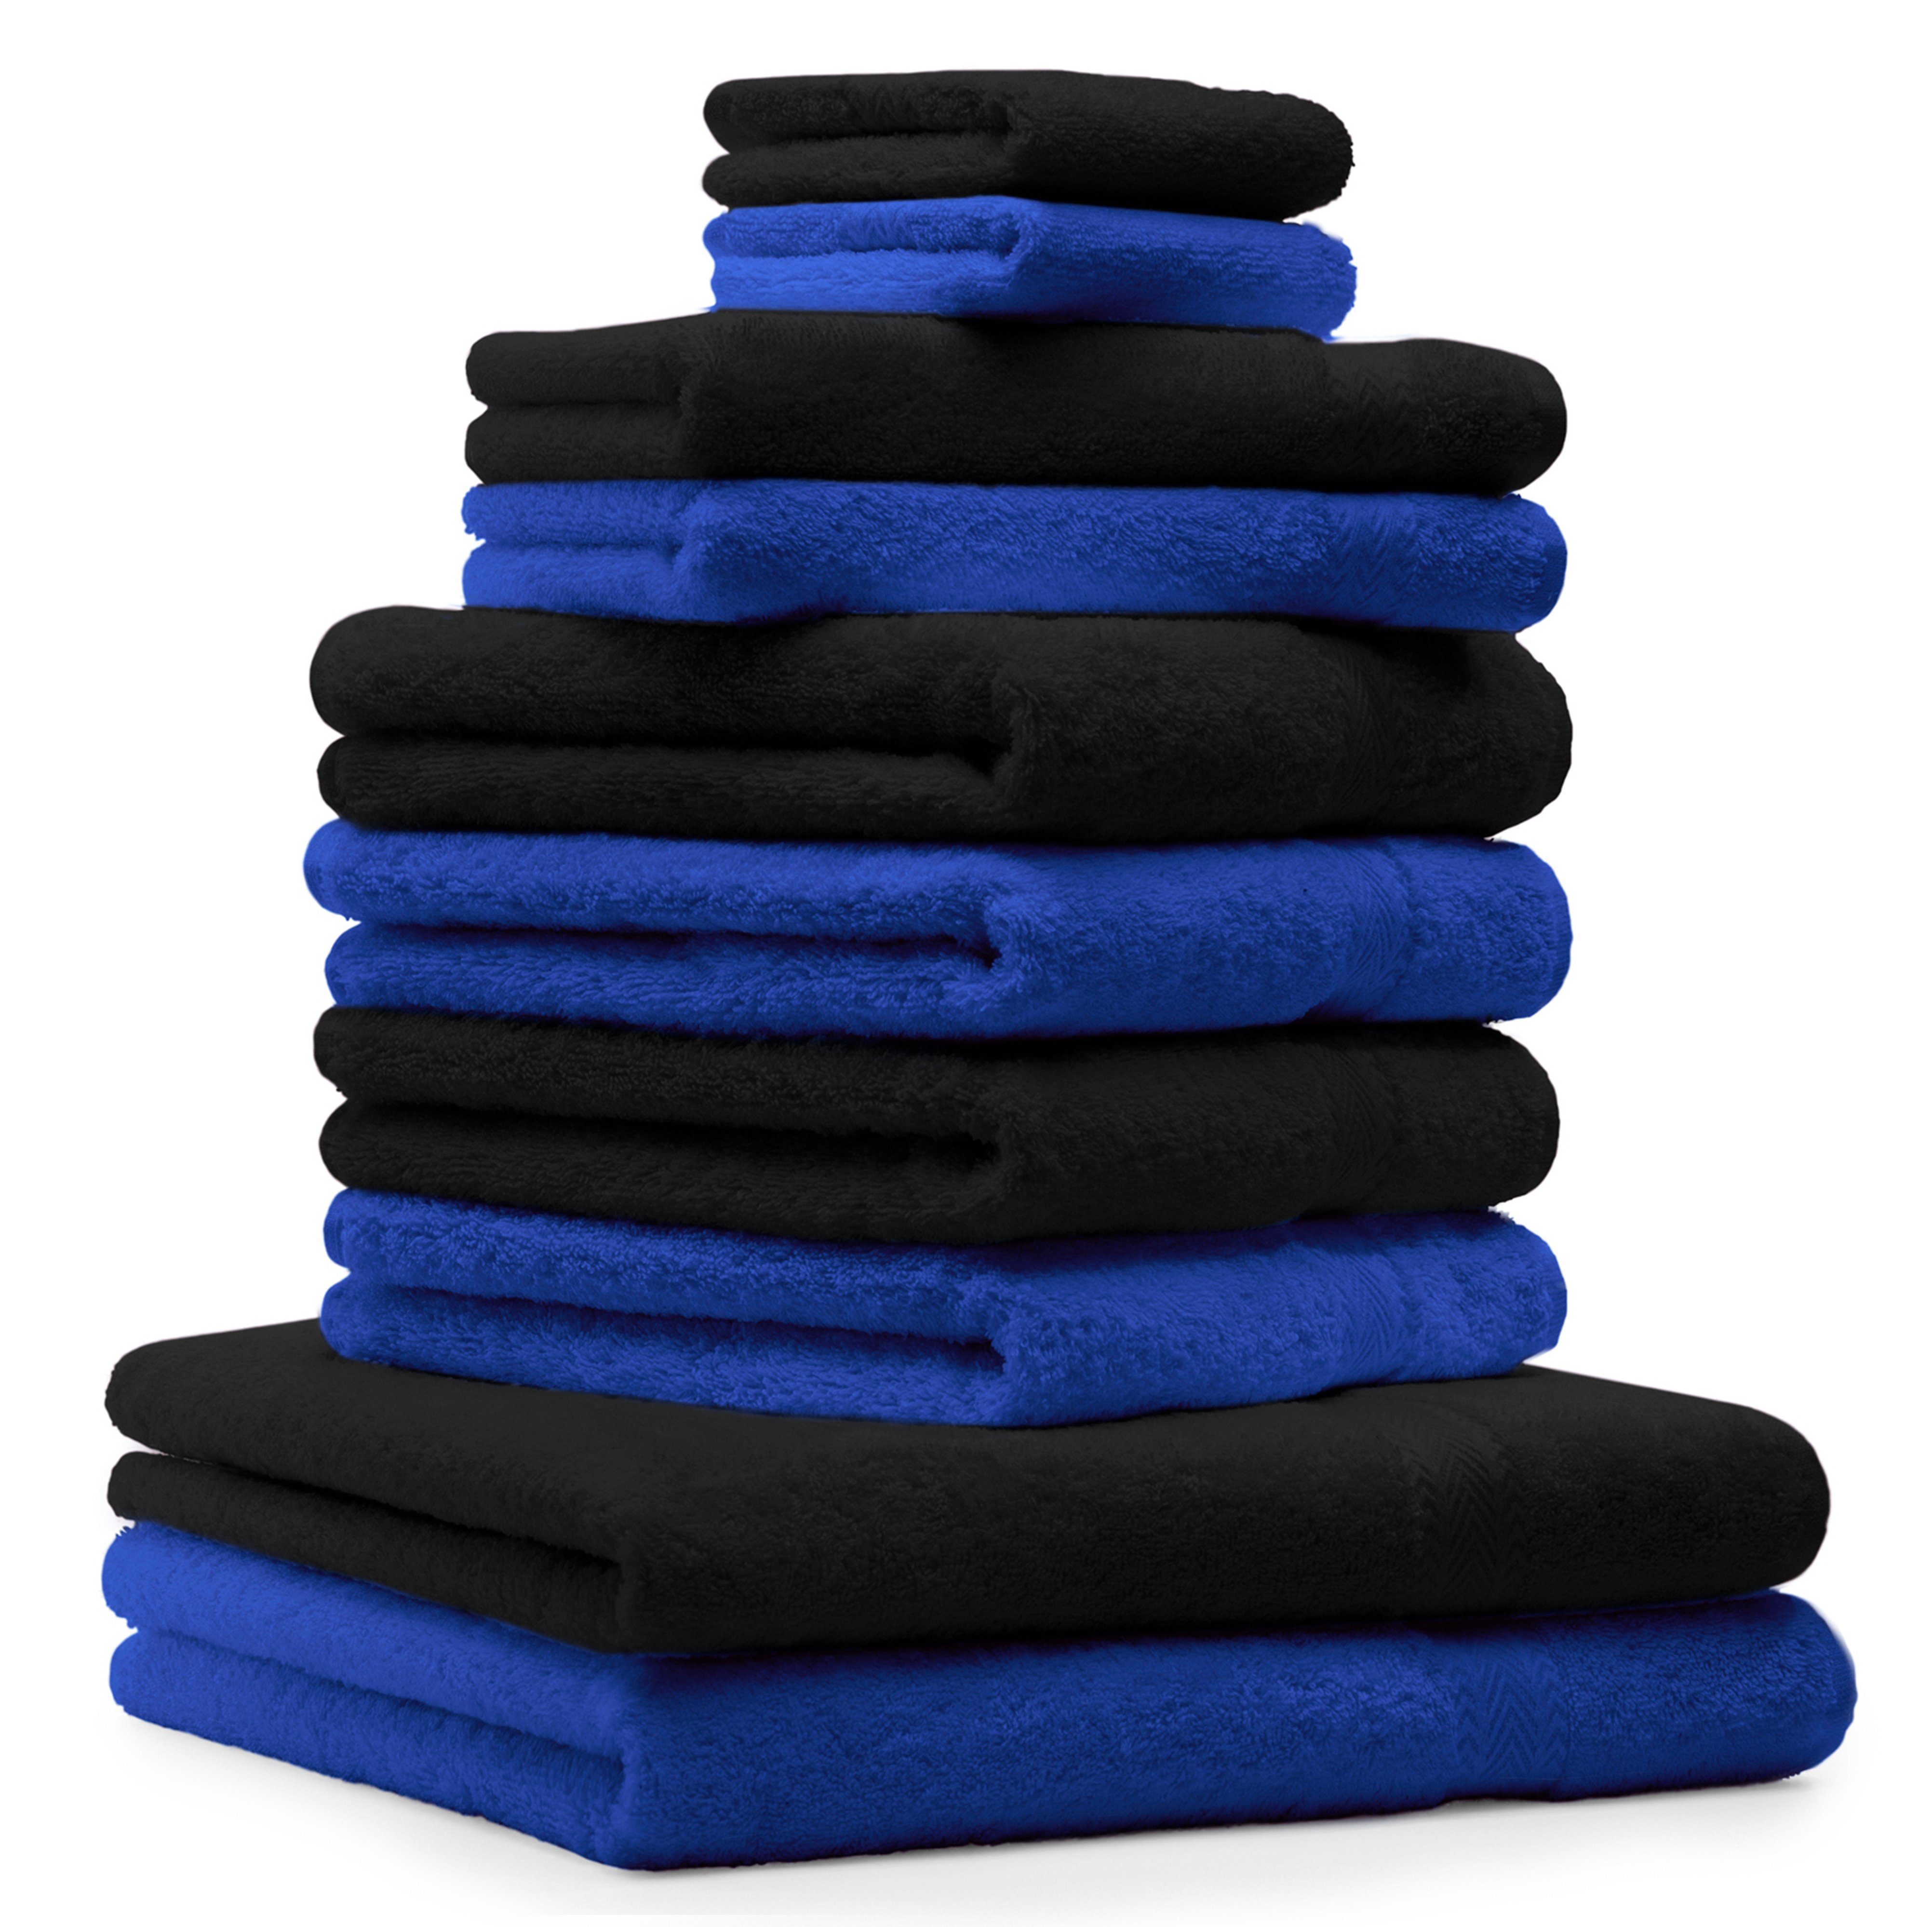 Betz Handtuch Set 10-TLG. Handtuch-Set Classic Farbe royalblau und schwarz, 100% Baumwolle | Handtuch-Sets